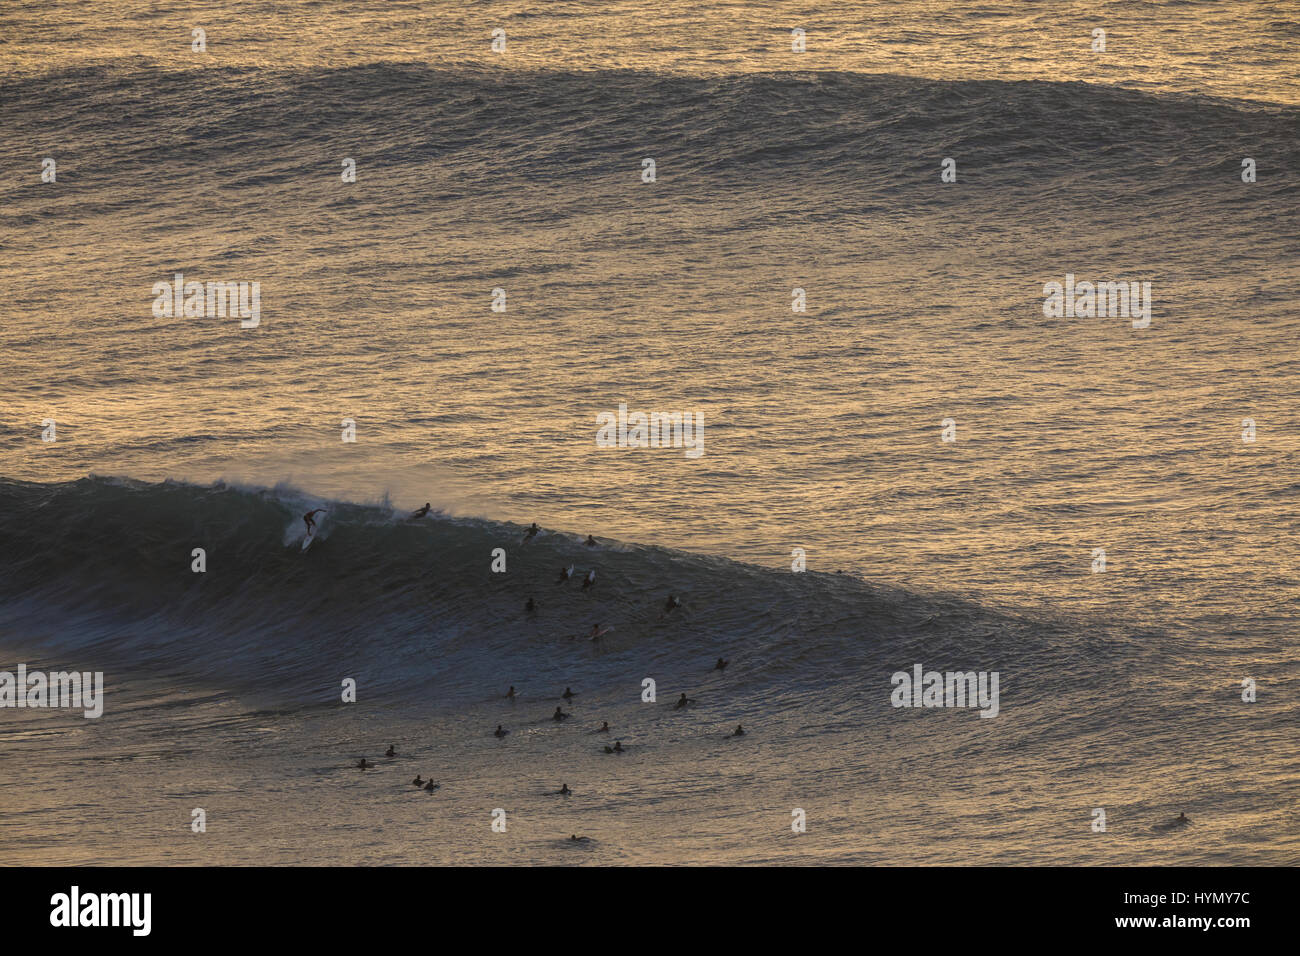 Un high angle view of a surfer une vague de capture au cours d'une forte houle à pipeline sur la côte nord d'Oahu. Banque D'Images